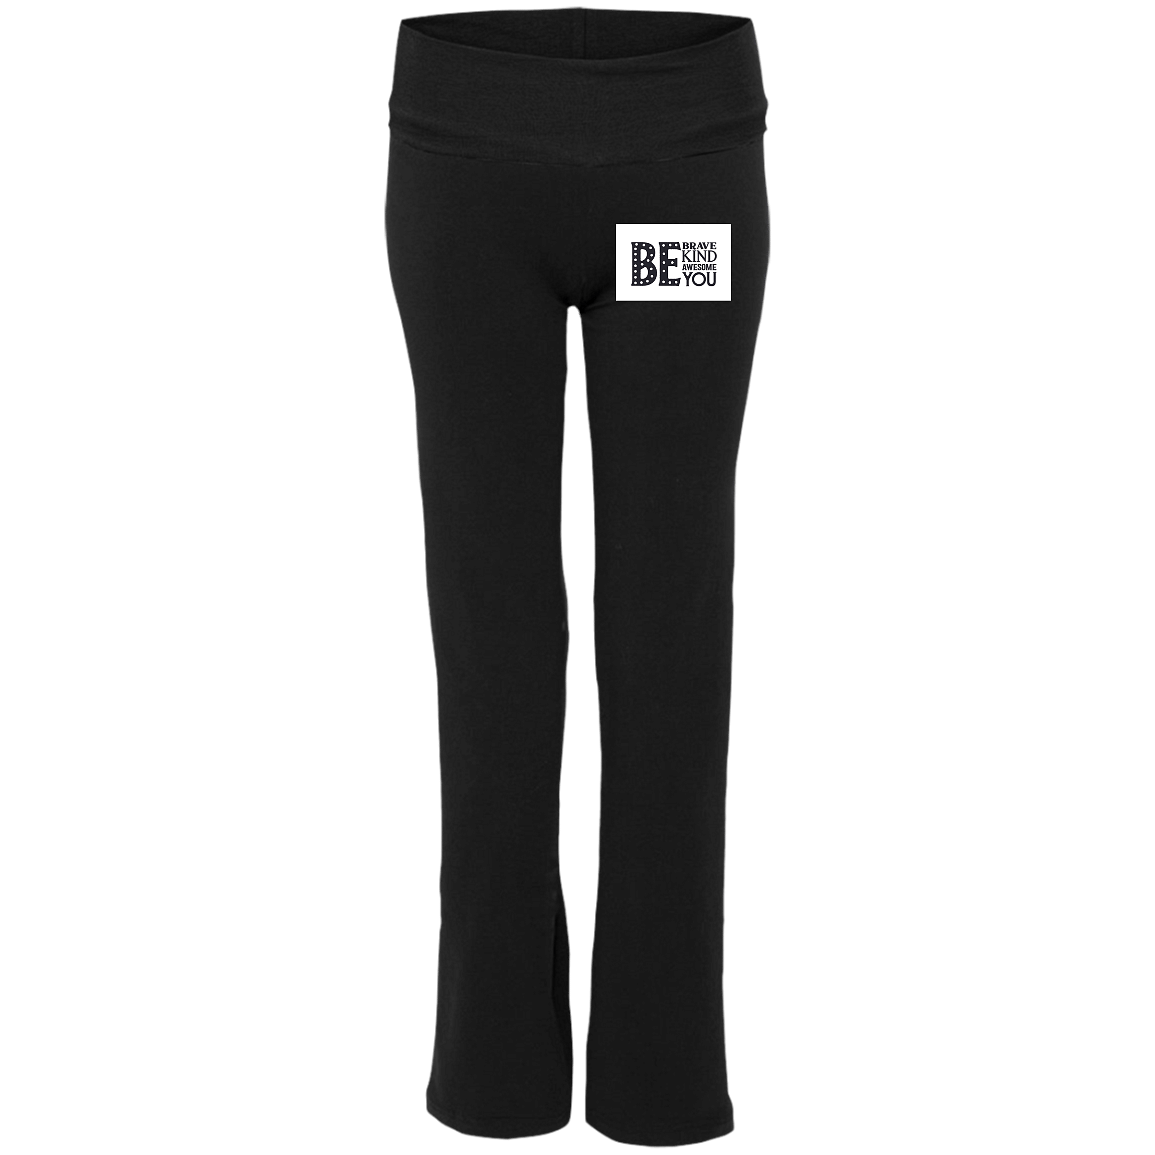 S16 Ladies' Yoga Pants